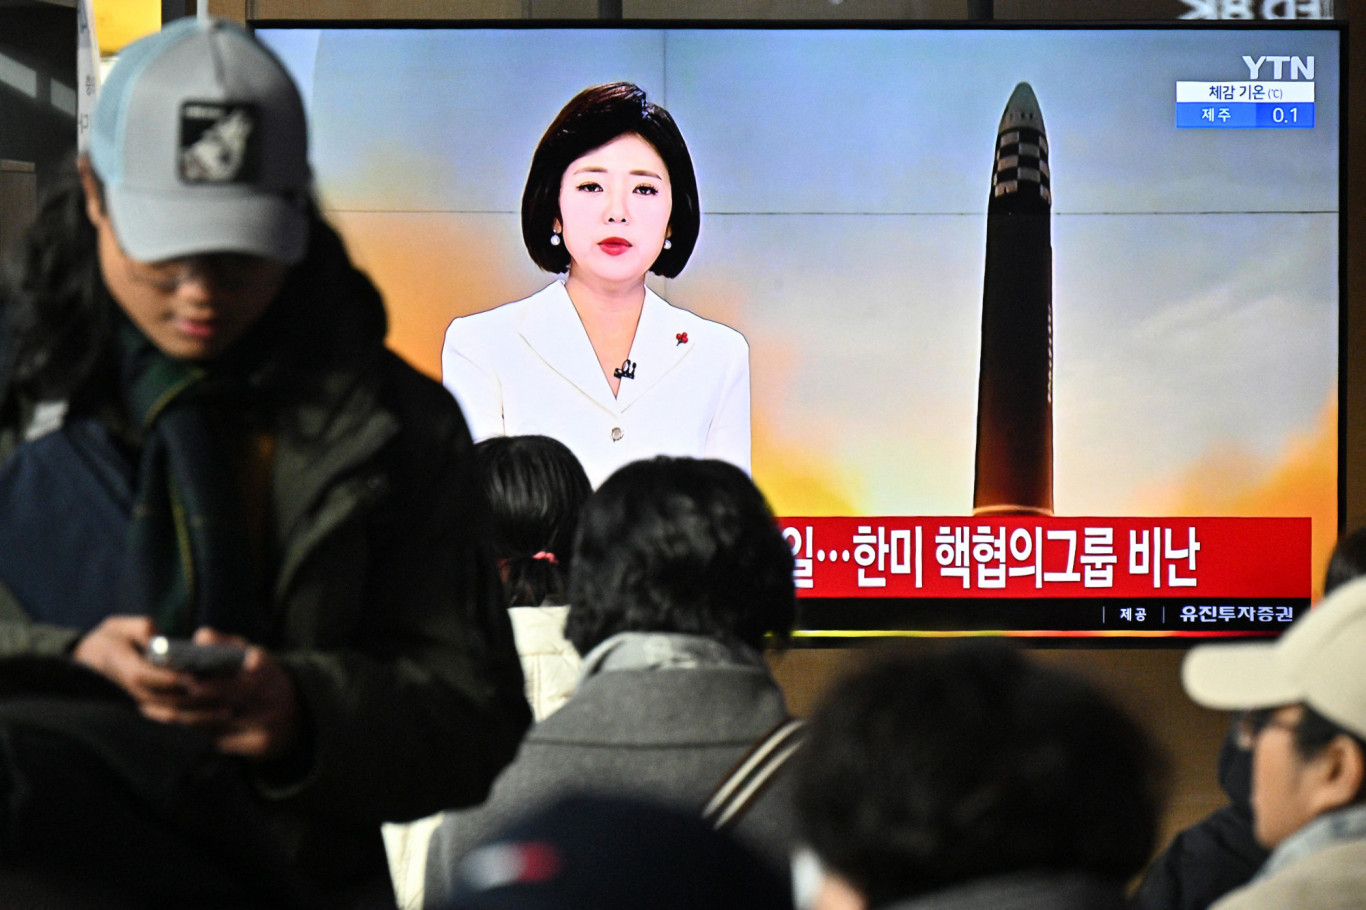 Észak Korea kilőtt egy nagy hatótávolságú rakétát a dél koreai amerikai